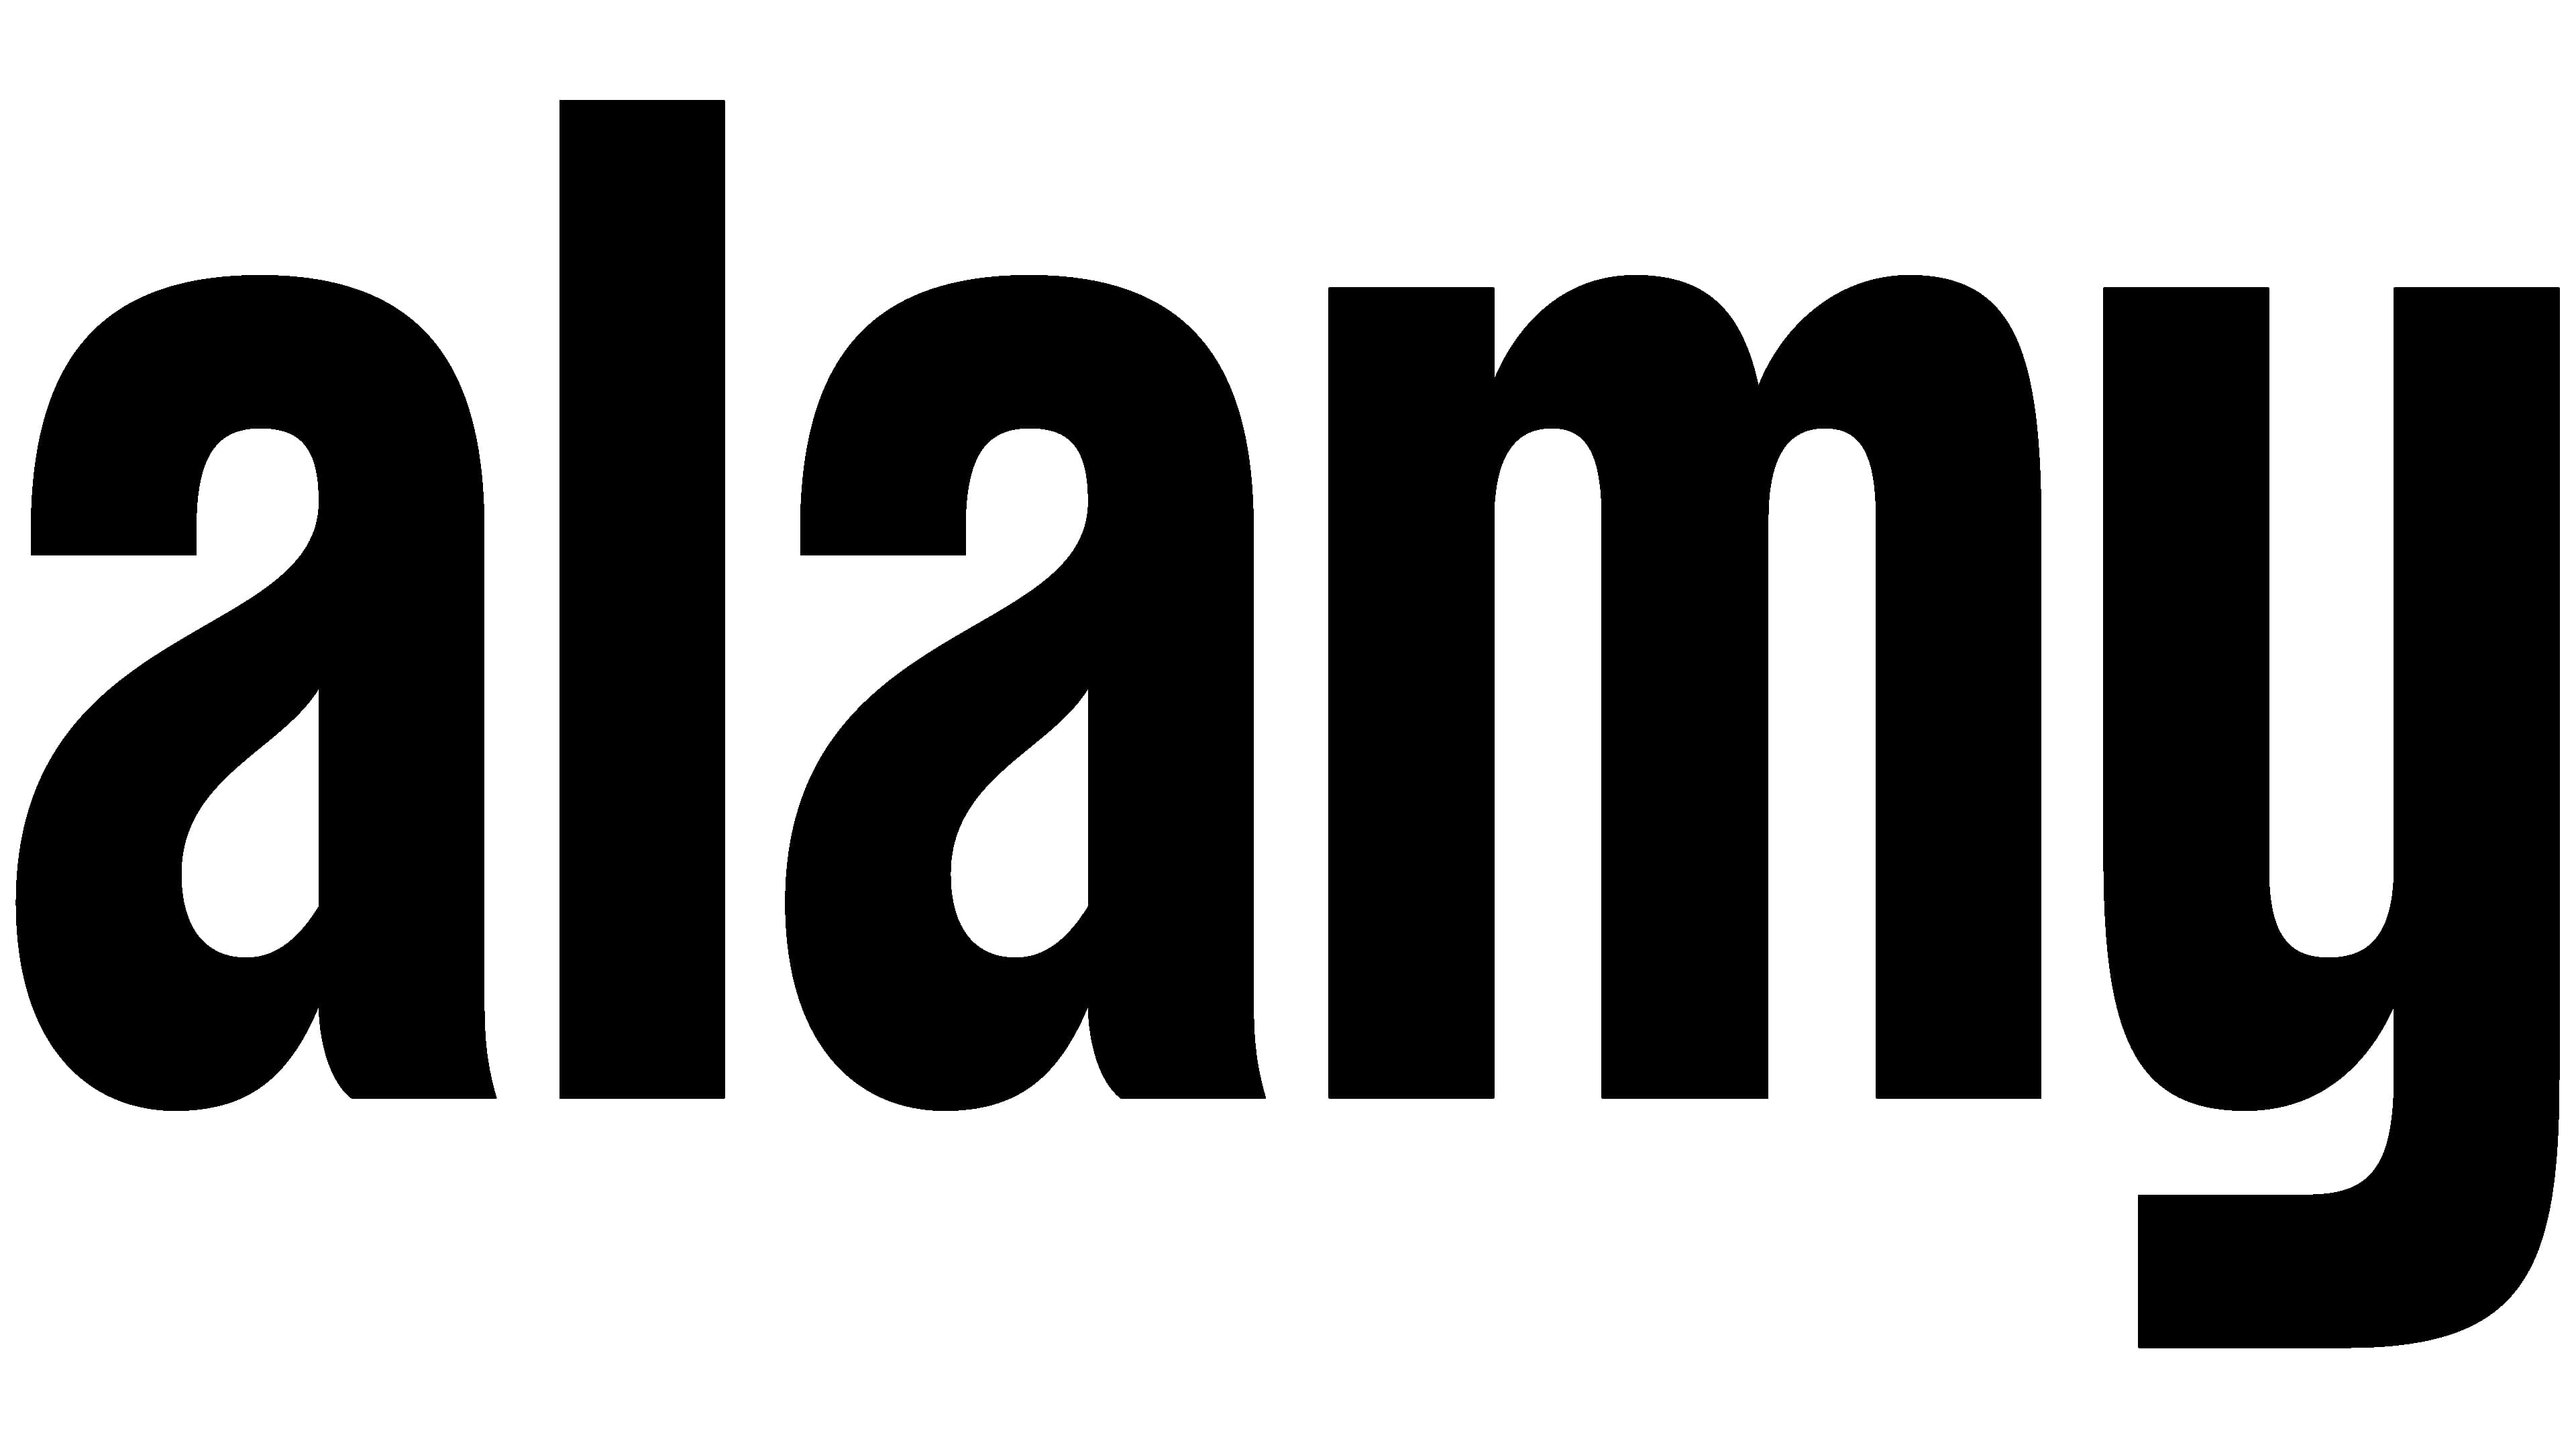 Alamy Logo